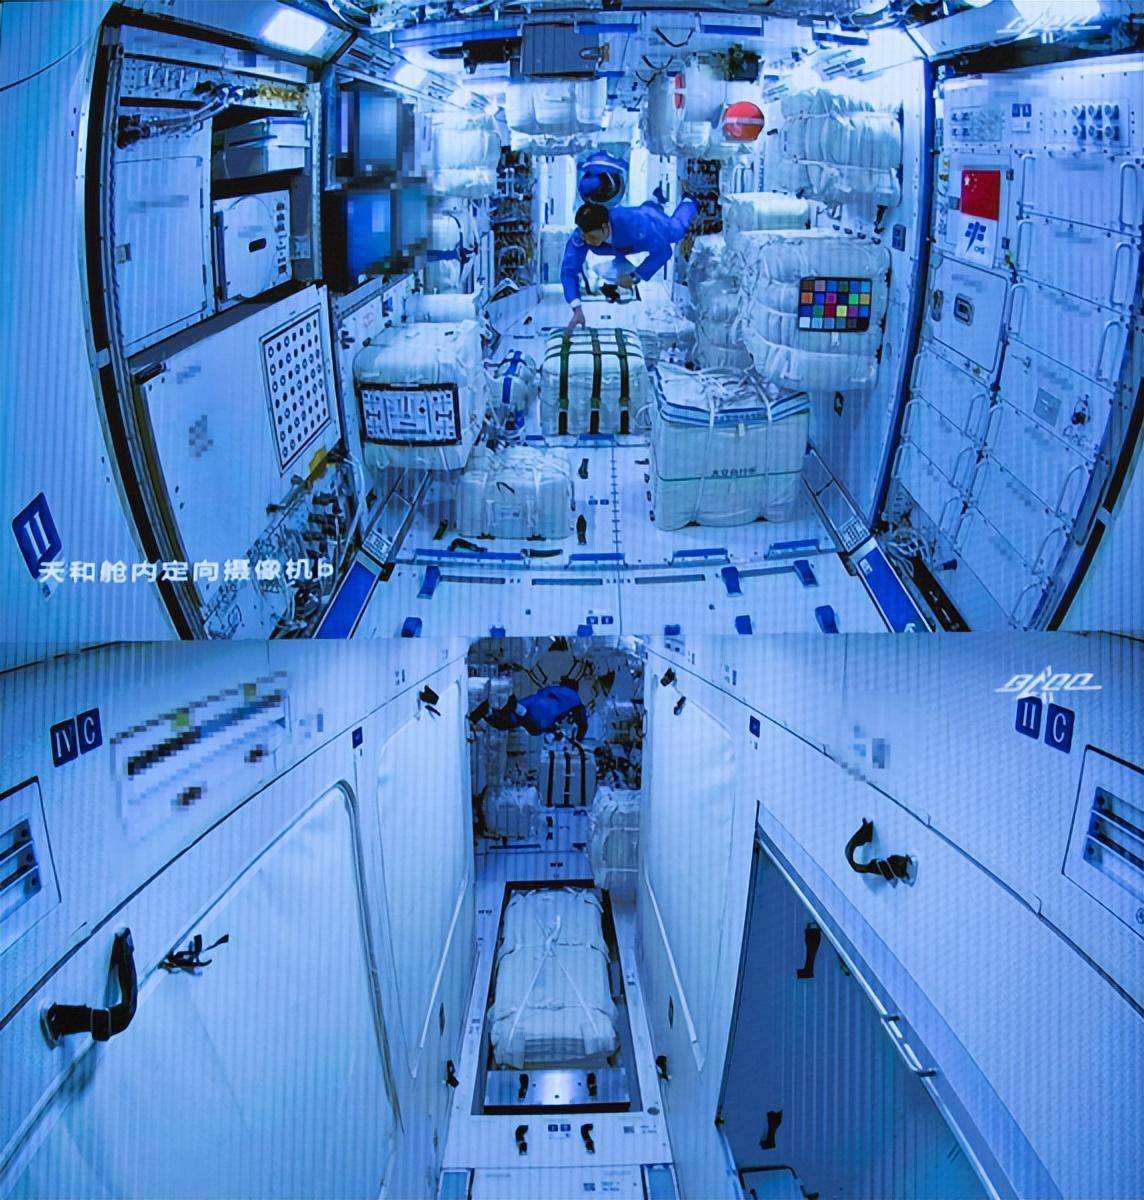 其实从我国航天人员的途中就已经能够看出,国际空间站内部虽然可以